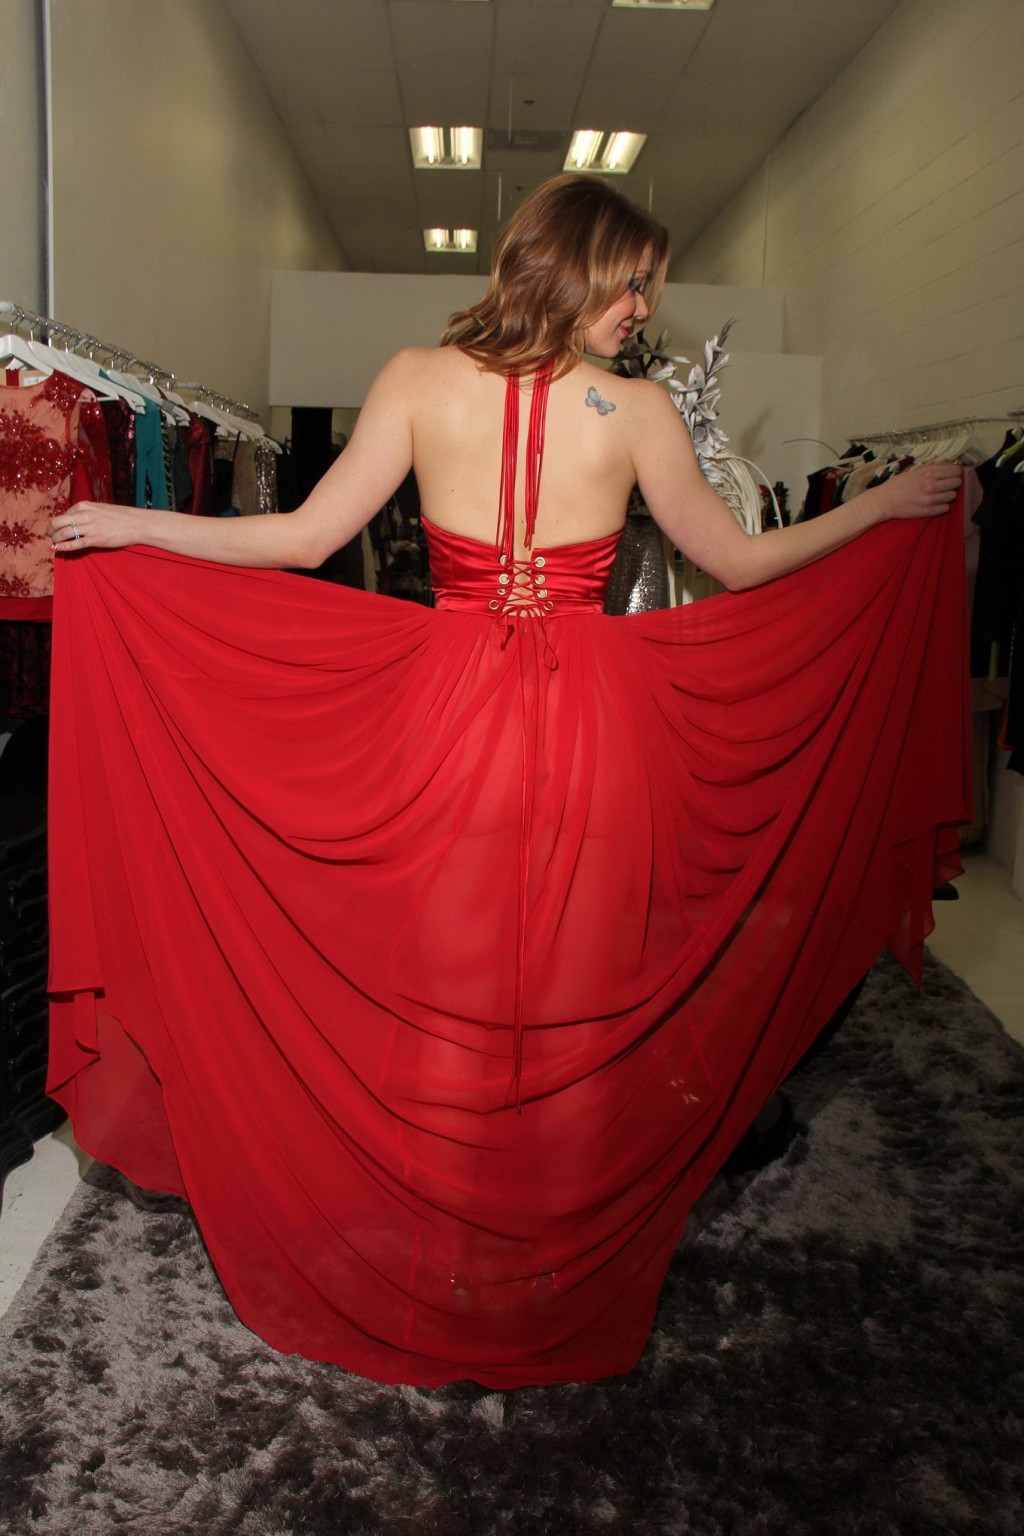 Maitland ward zeigt ein riesiges Dekolleté in einem knappen roten Kleid in ihrem Pre-Nye-Foto
 #75176318